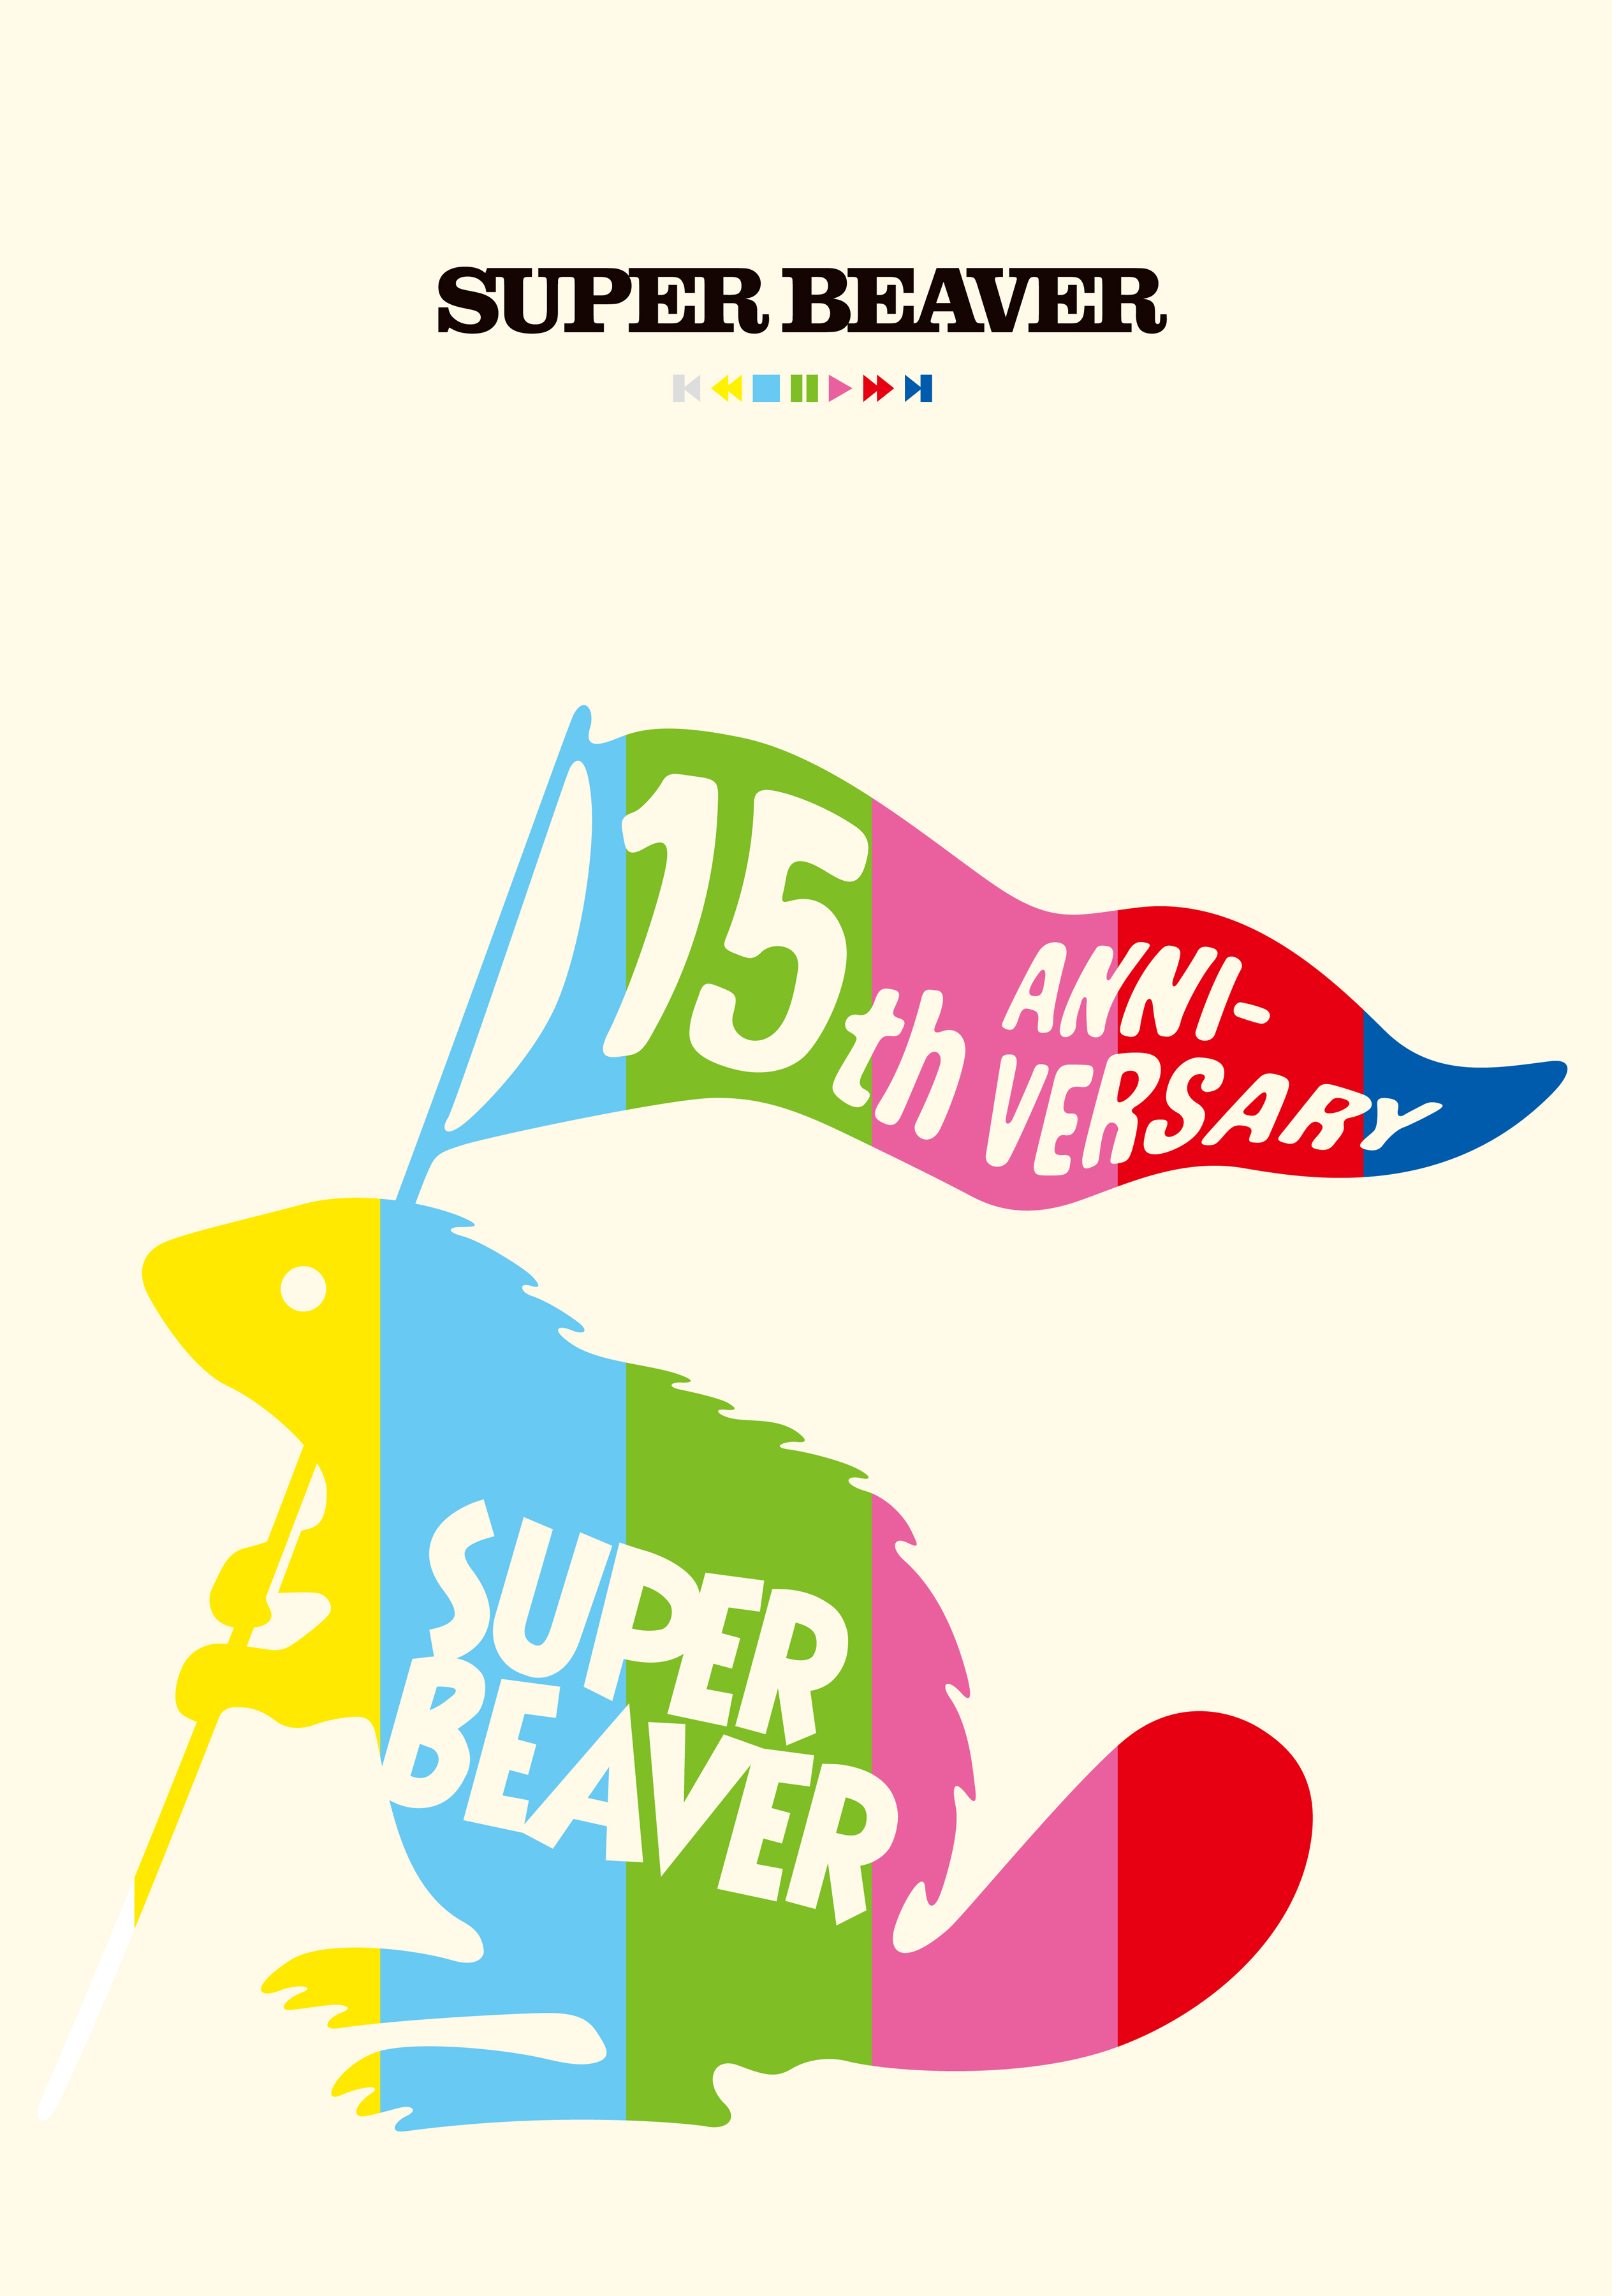 SUPER BEAVER 歓びの明日に | www.viafeira.com.br